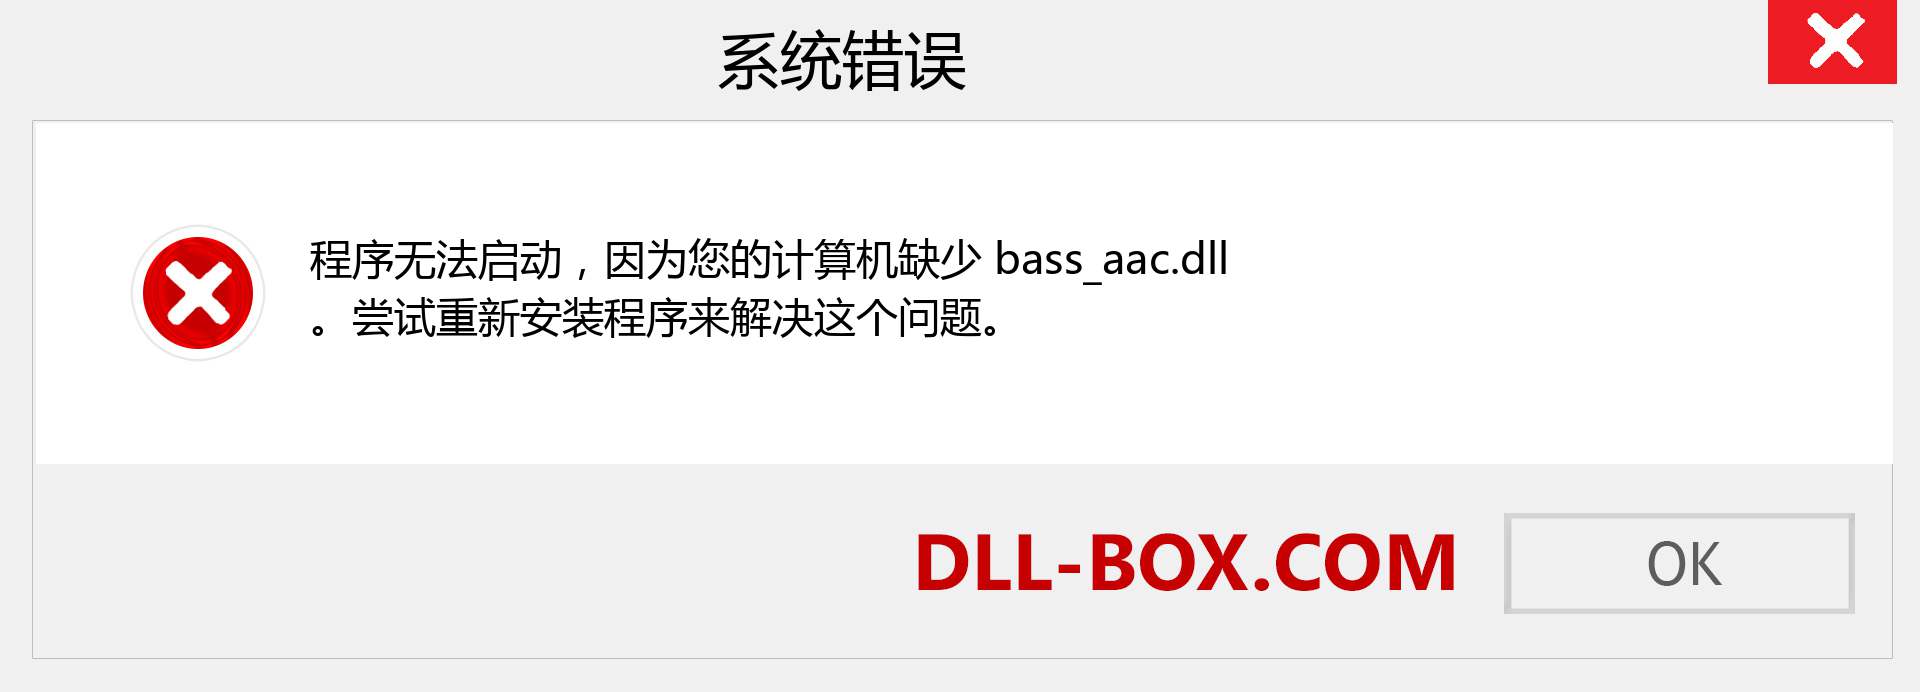 bass_aac.dll 文件丢失？。 适用于 Windows 7、8、10 的下载 - 修复 Windows、照片、图像上的 bass_aac dll 丢失错误